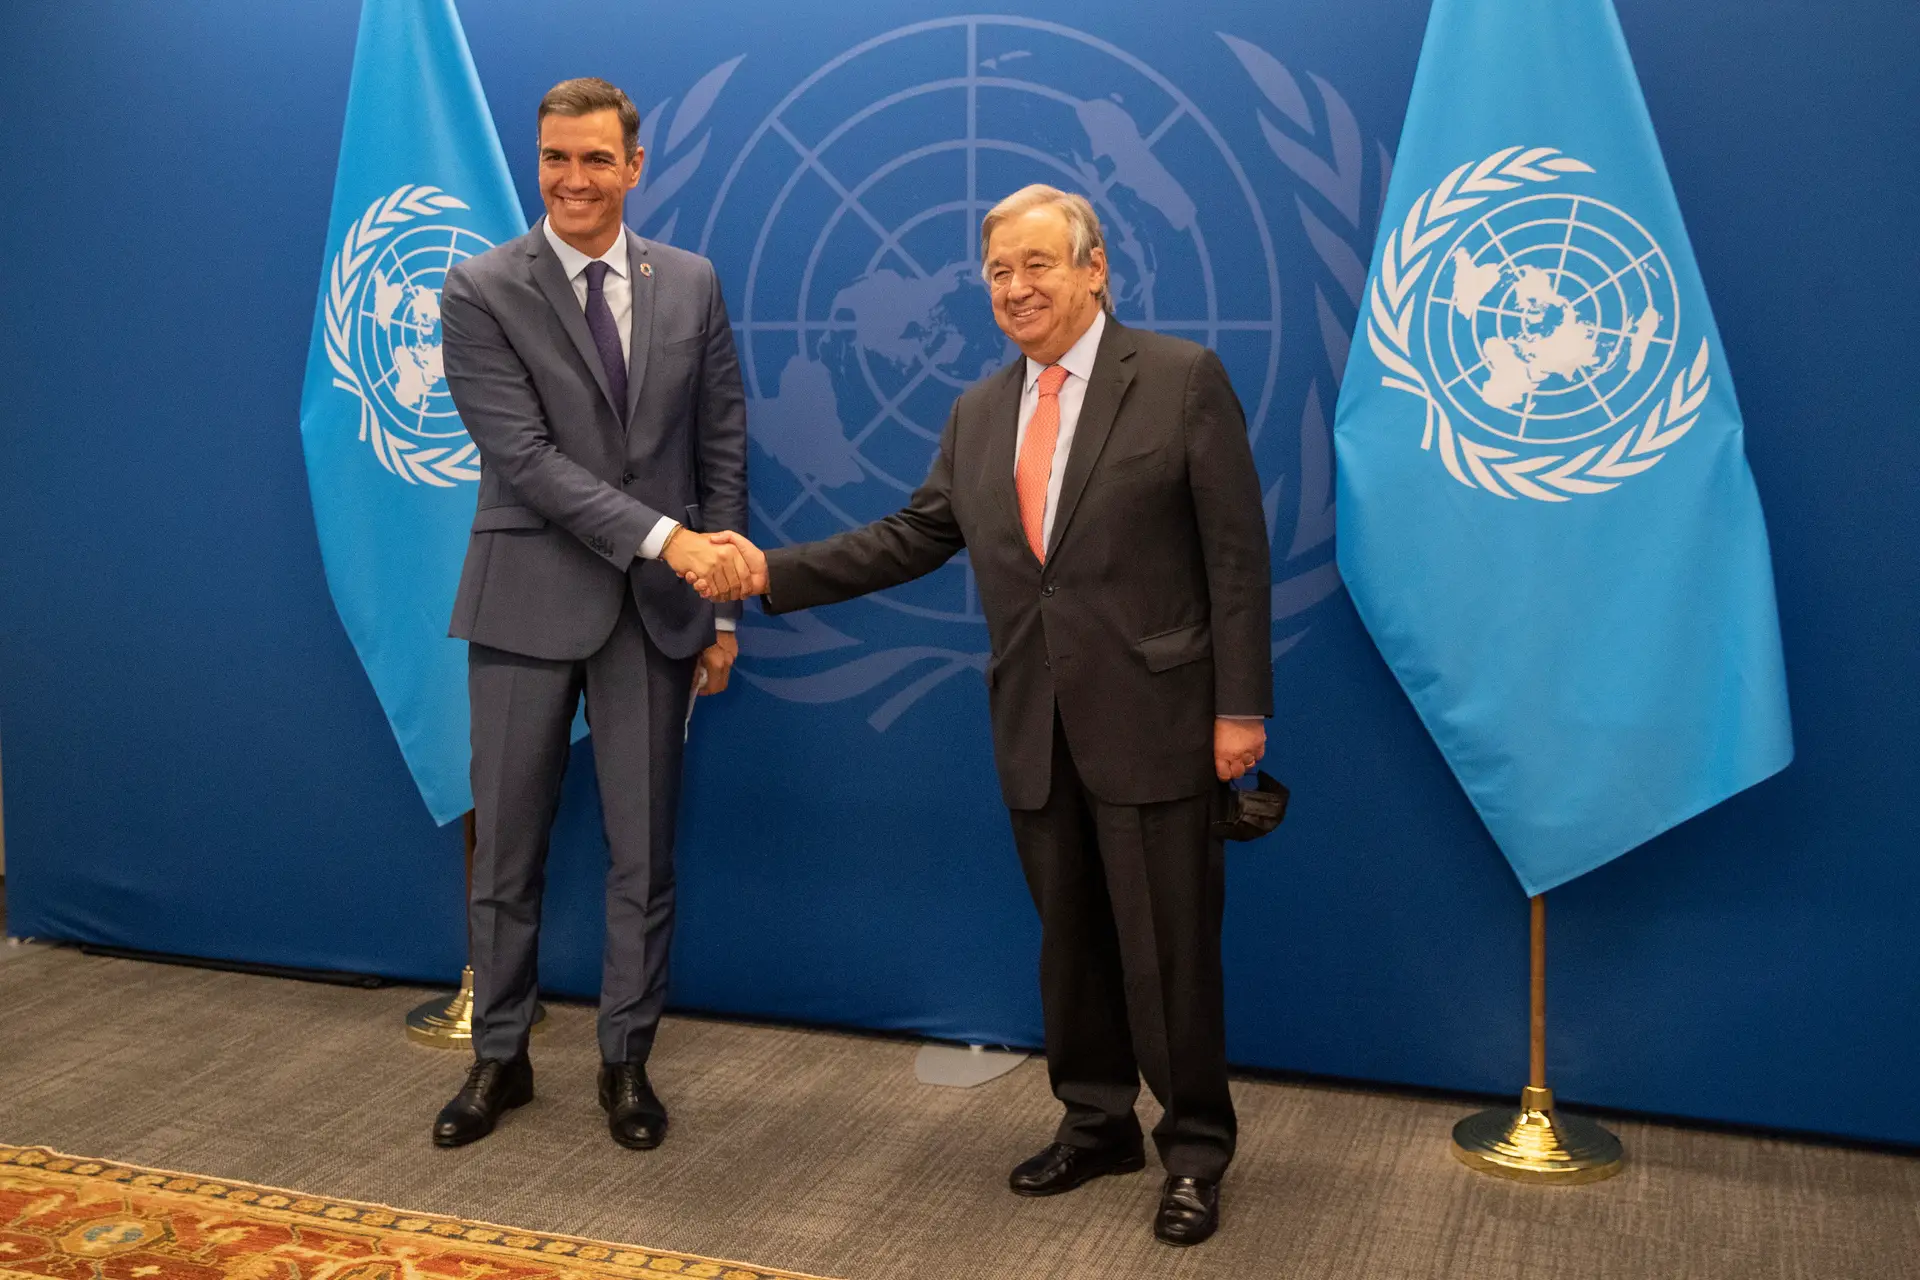 PM espanhol oferece-se a Guterres para alcançar acordos perante crise global